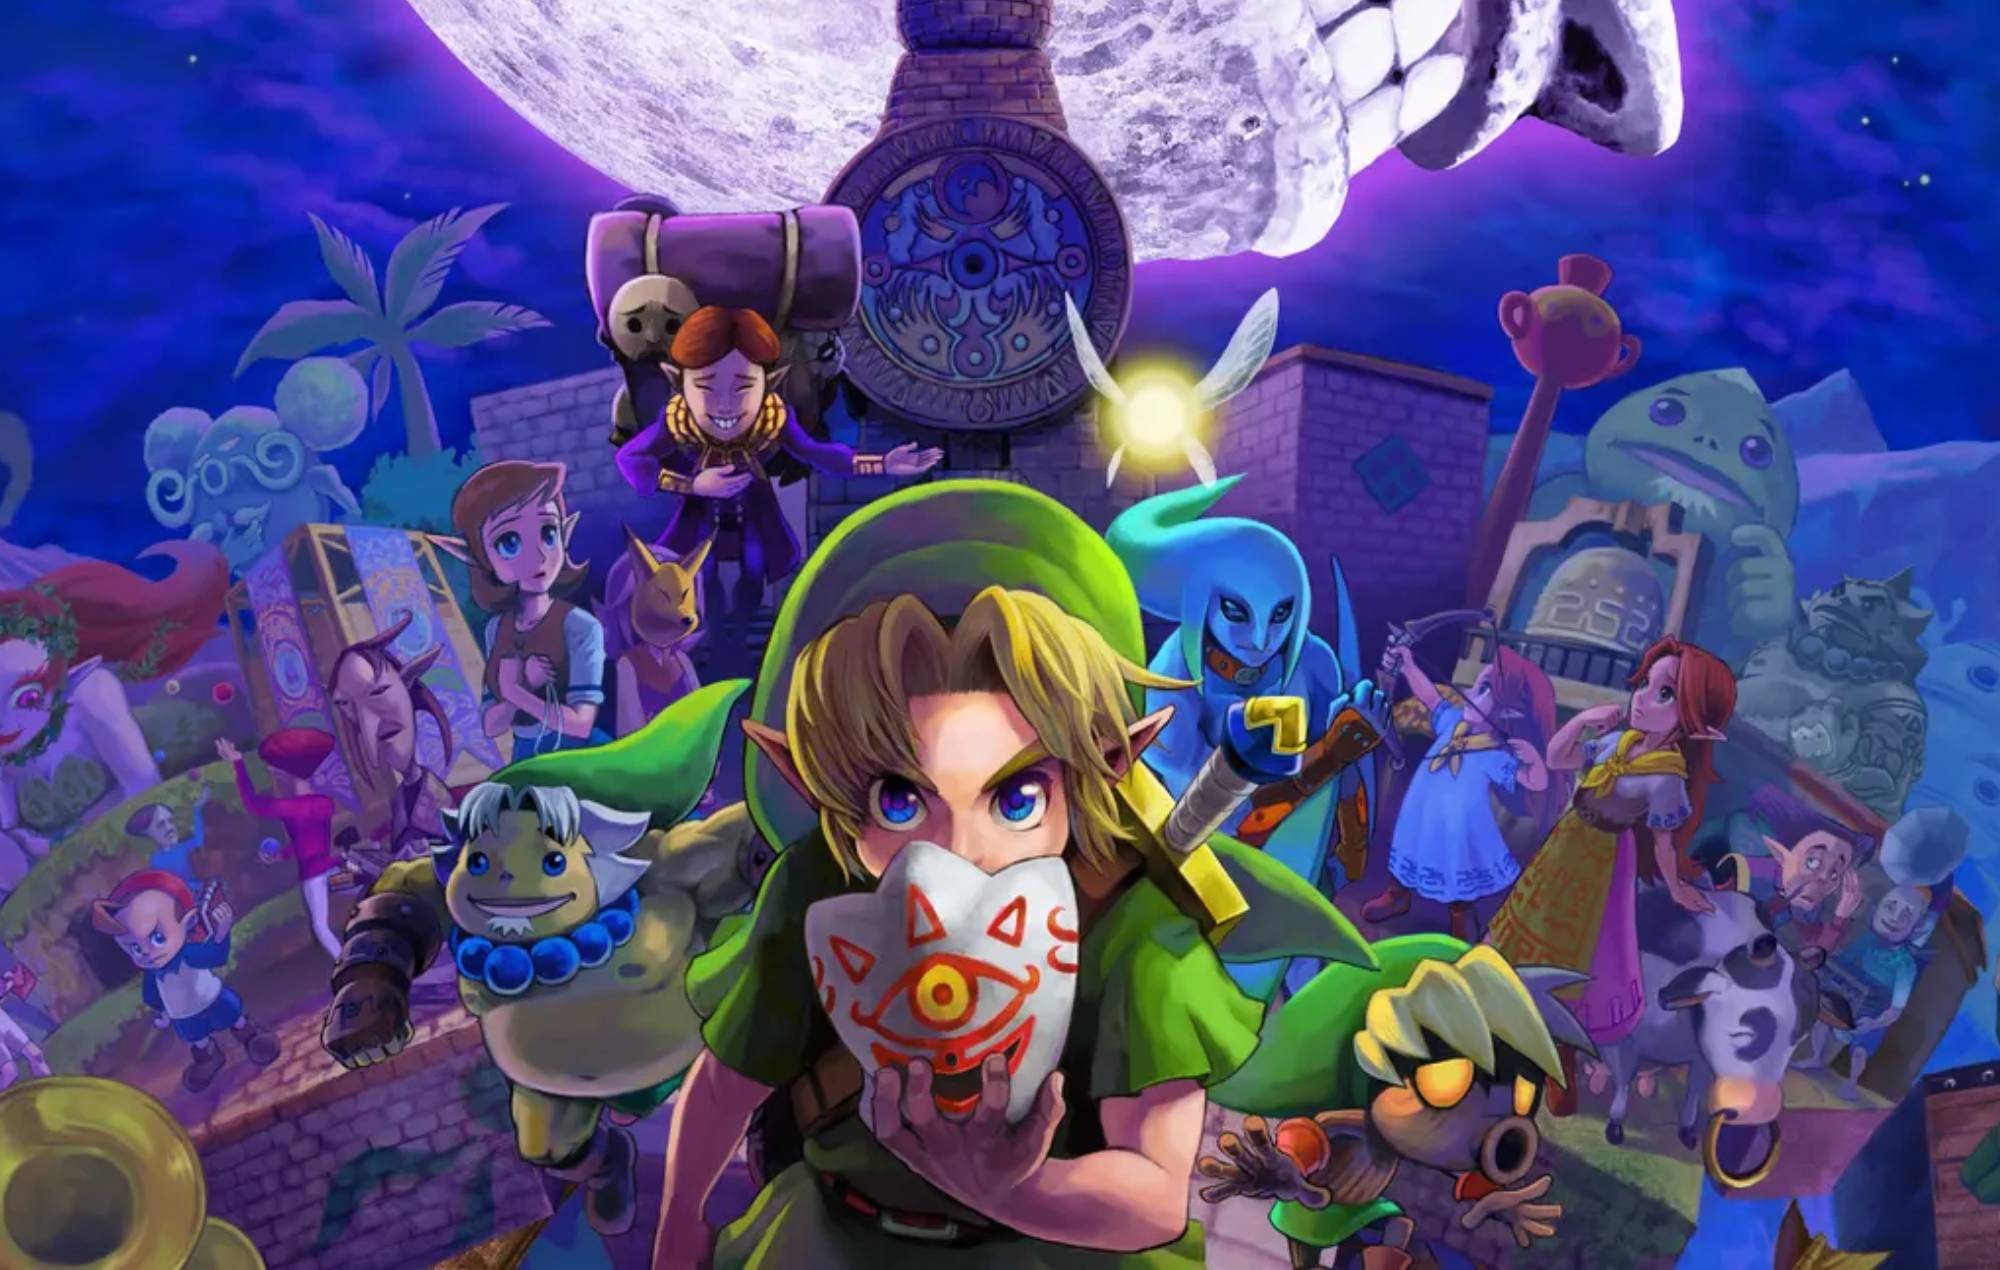 The Legend of Zelda: Majora's Mask - Part 39 - The Moon 